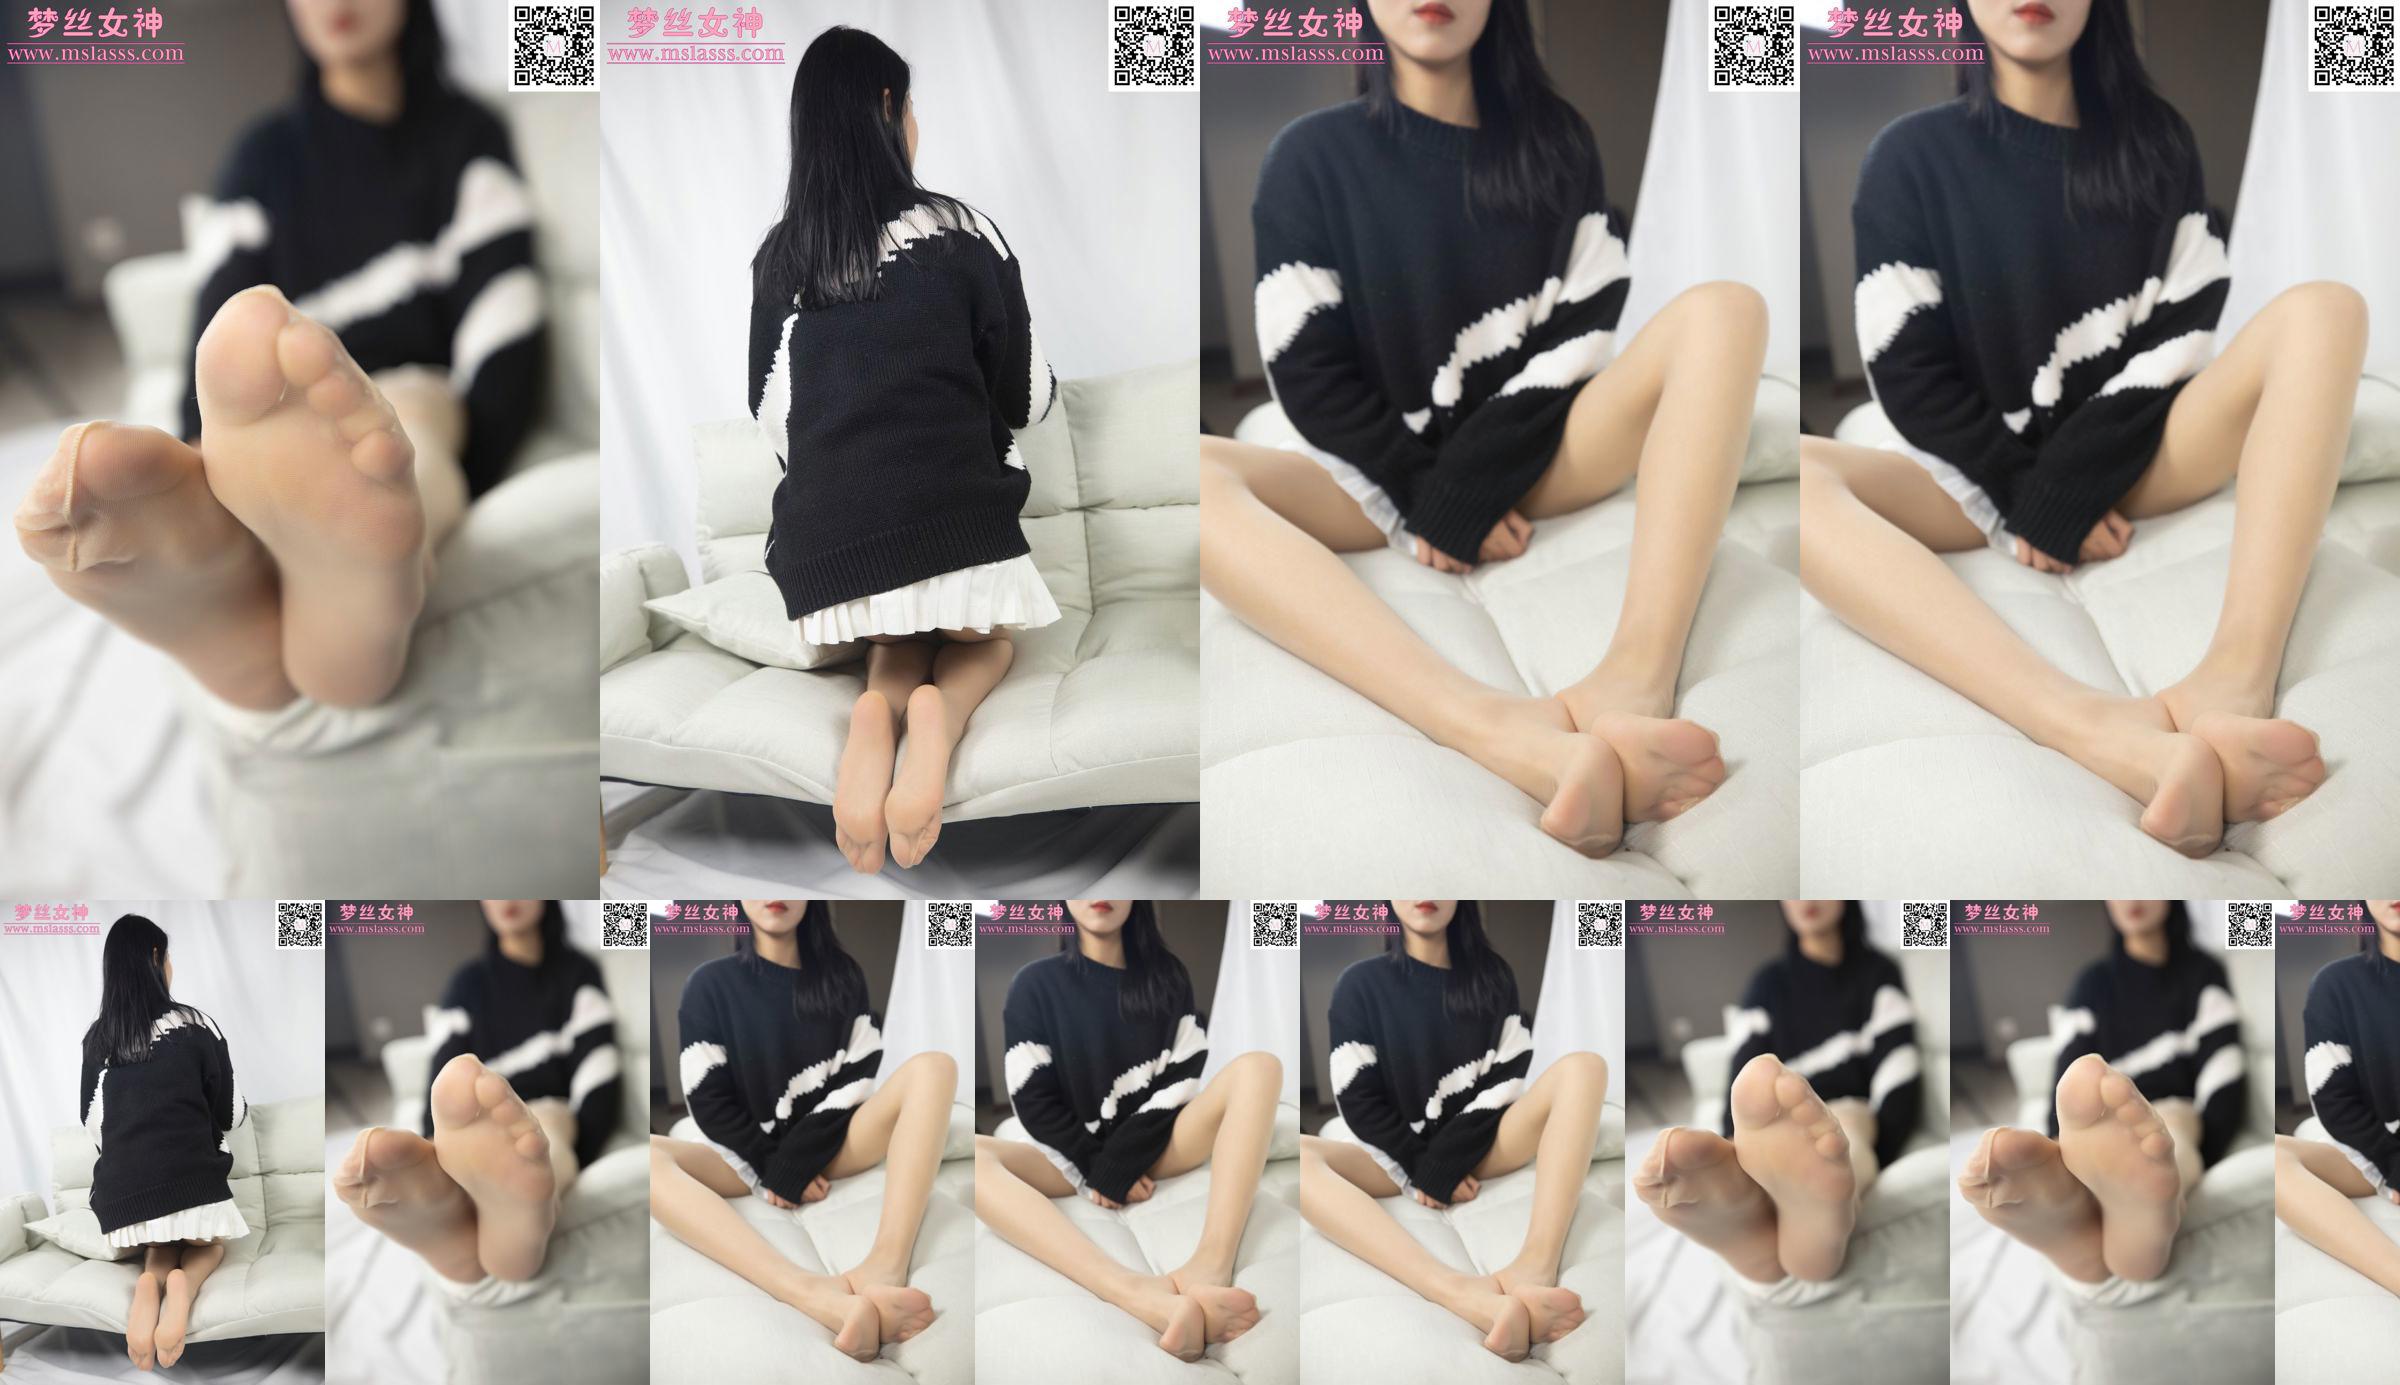 [Goddess of Dreams MSLASS] Xiaomi's trui kan haar lange benen niet stoppen No.7aa231 Pagina 30